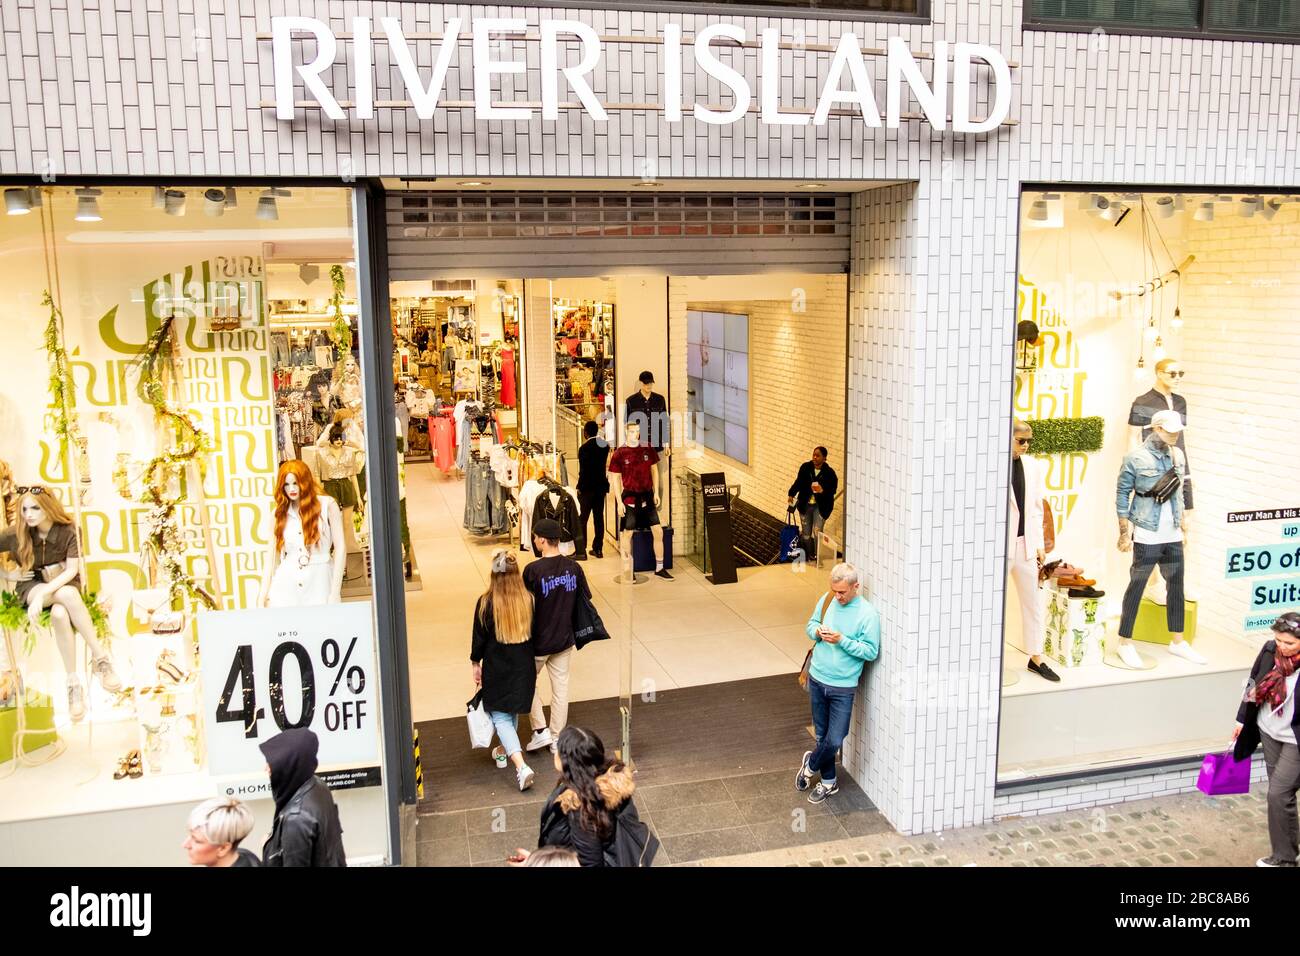 River Island- Marca británica de moda en la calle alta- logotipo exterior / señalización- Londres Foto de stock